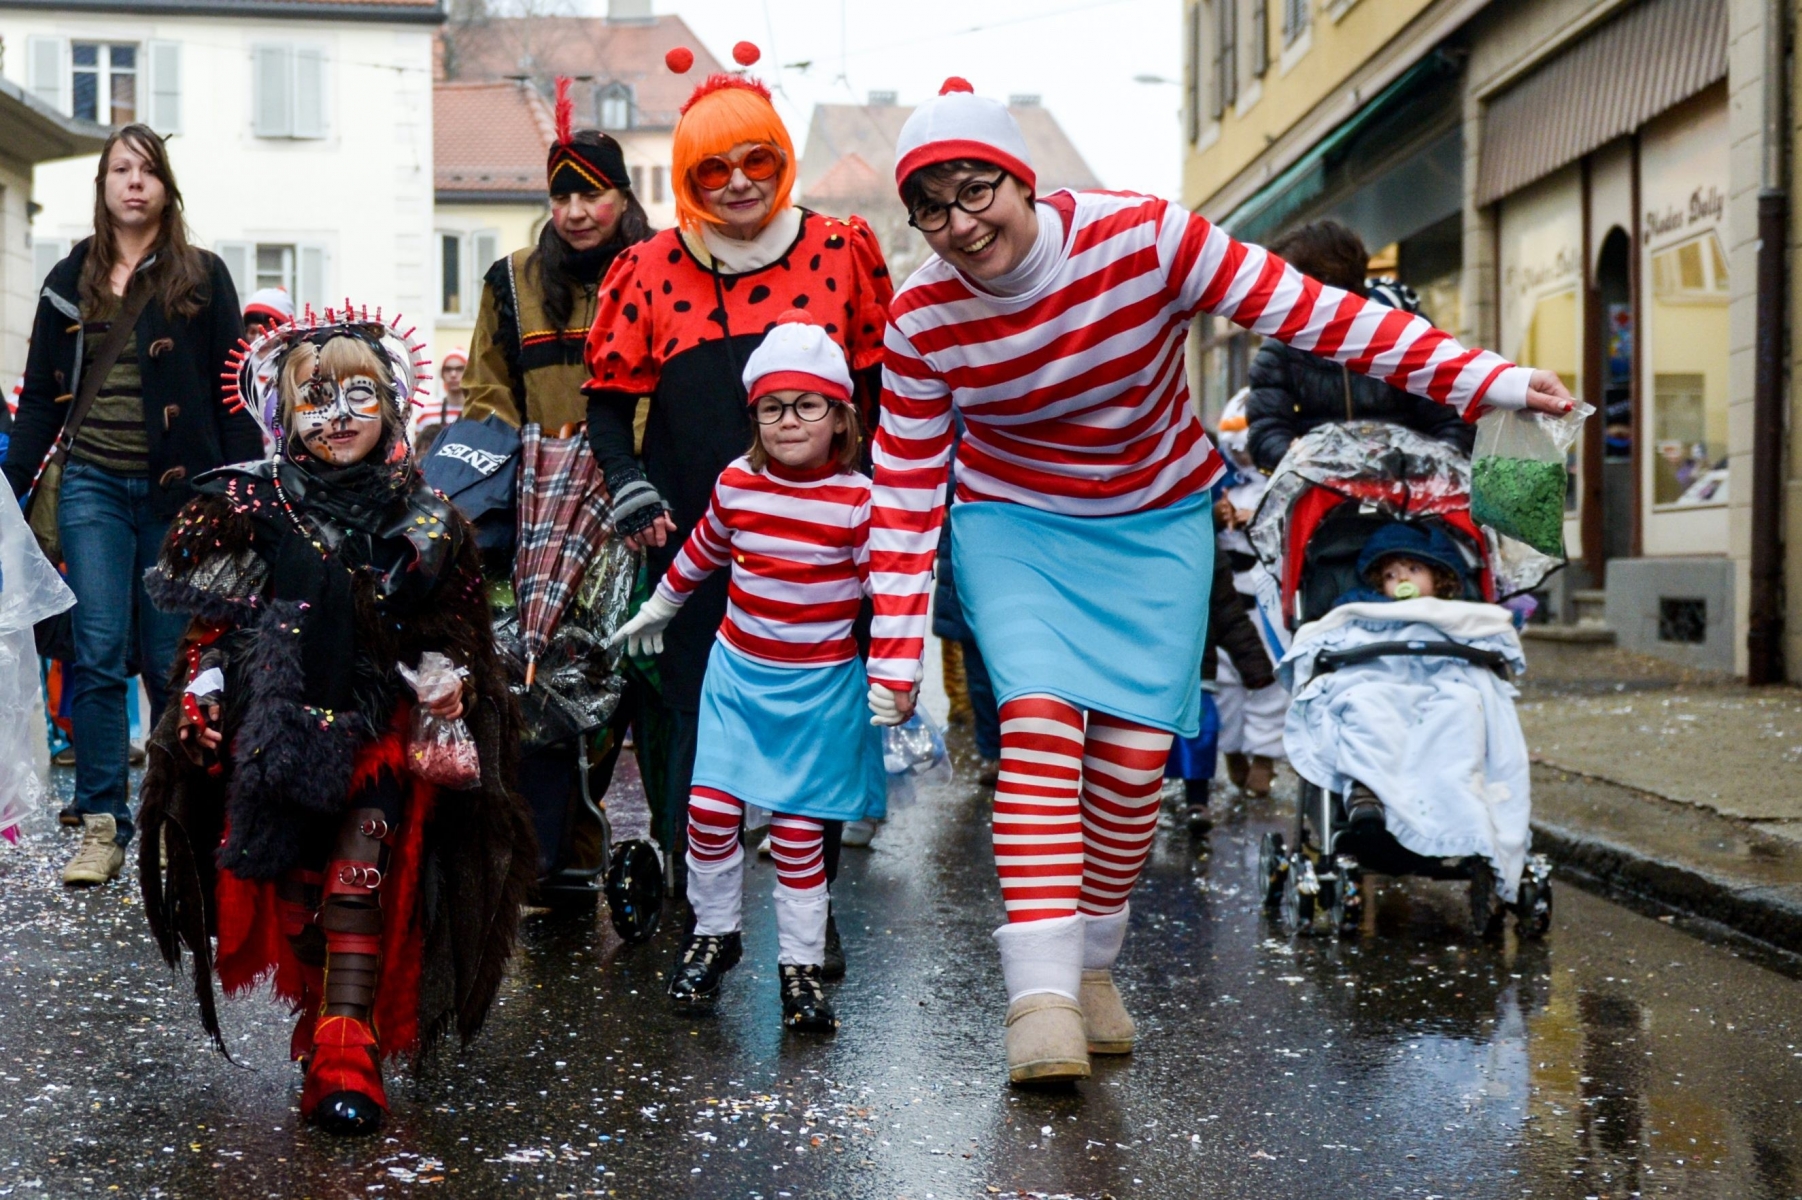 Le Carnaval de La Chaux-de-Fonds



La Chaux-de-Fonds, le 21 mars 2015

Photo: Christian Galley LA CHAUX-DE-FONS